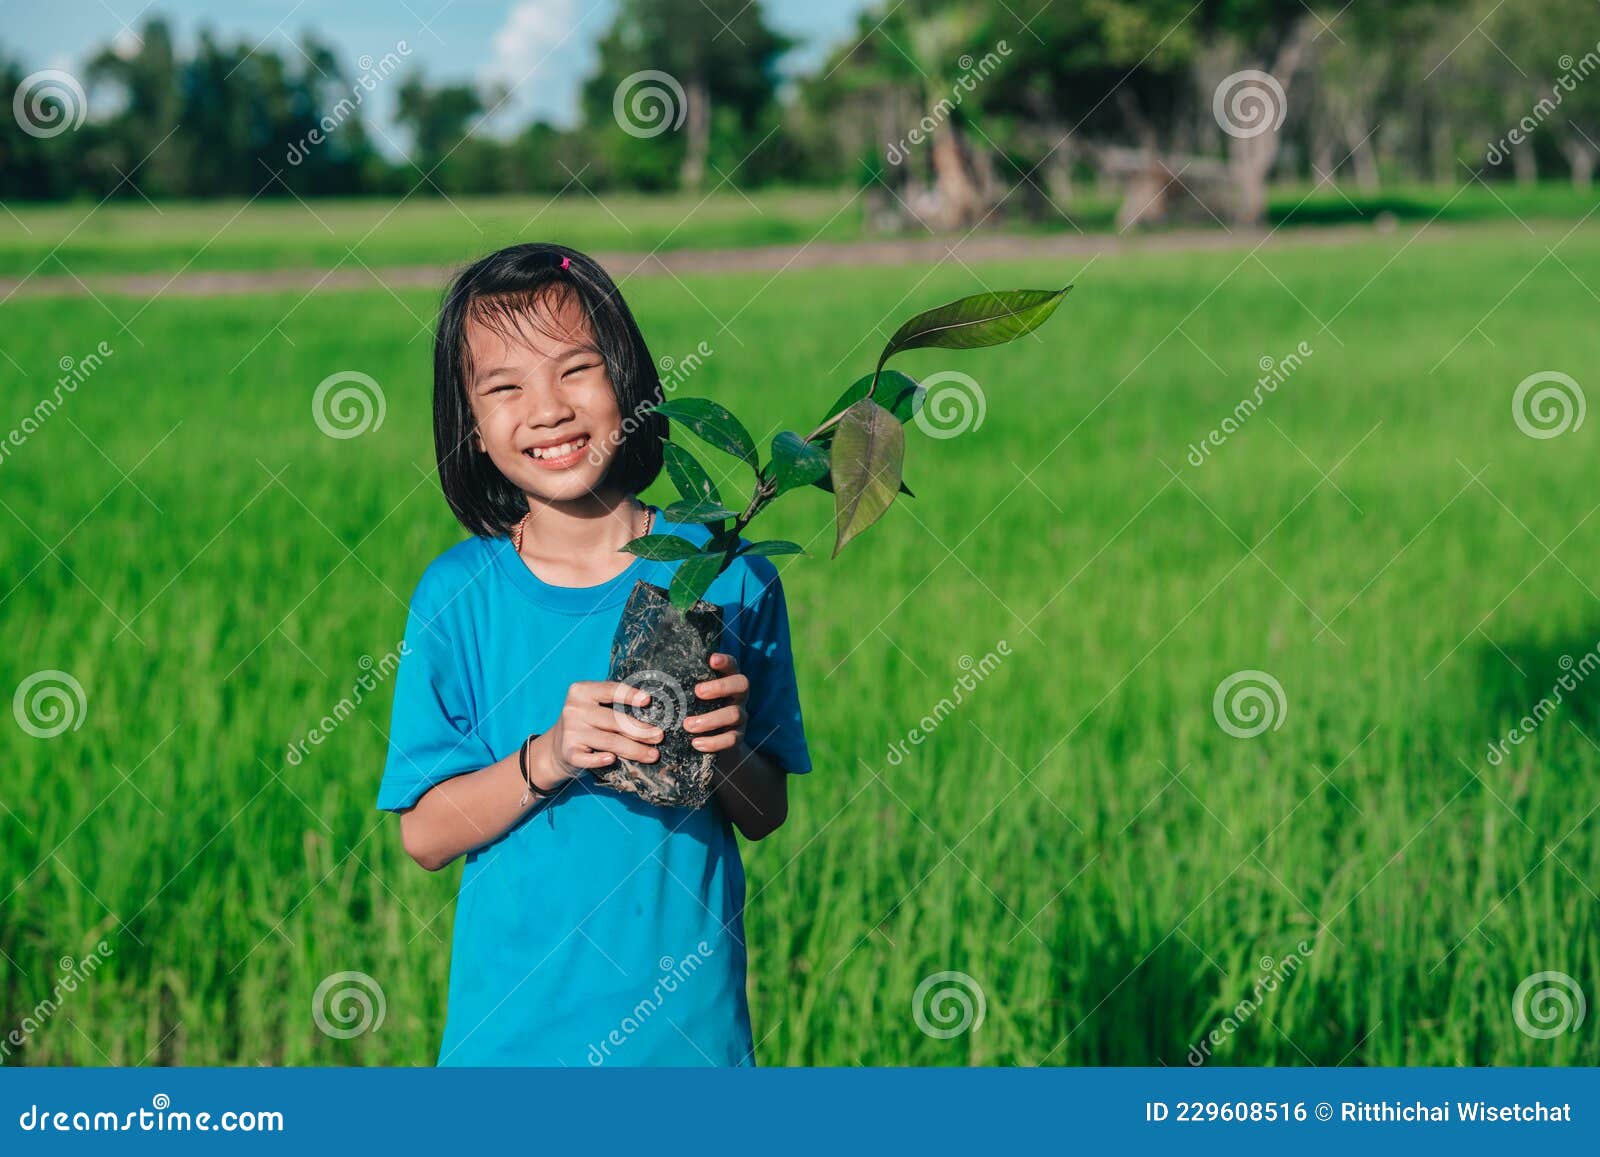 Planter semences avec les enfants